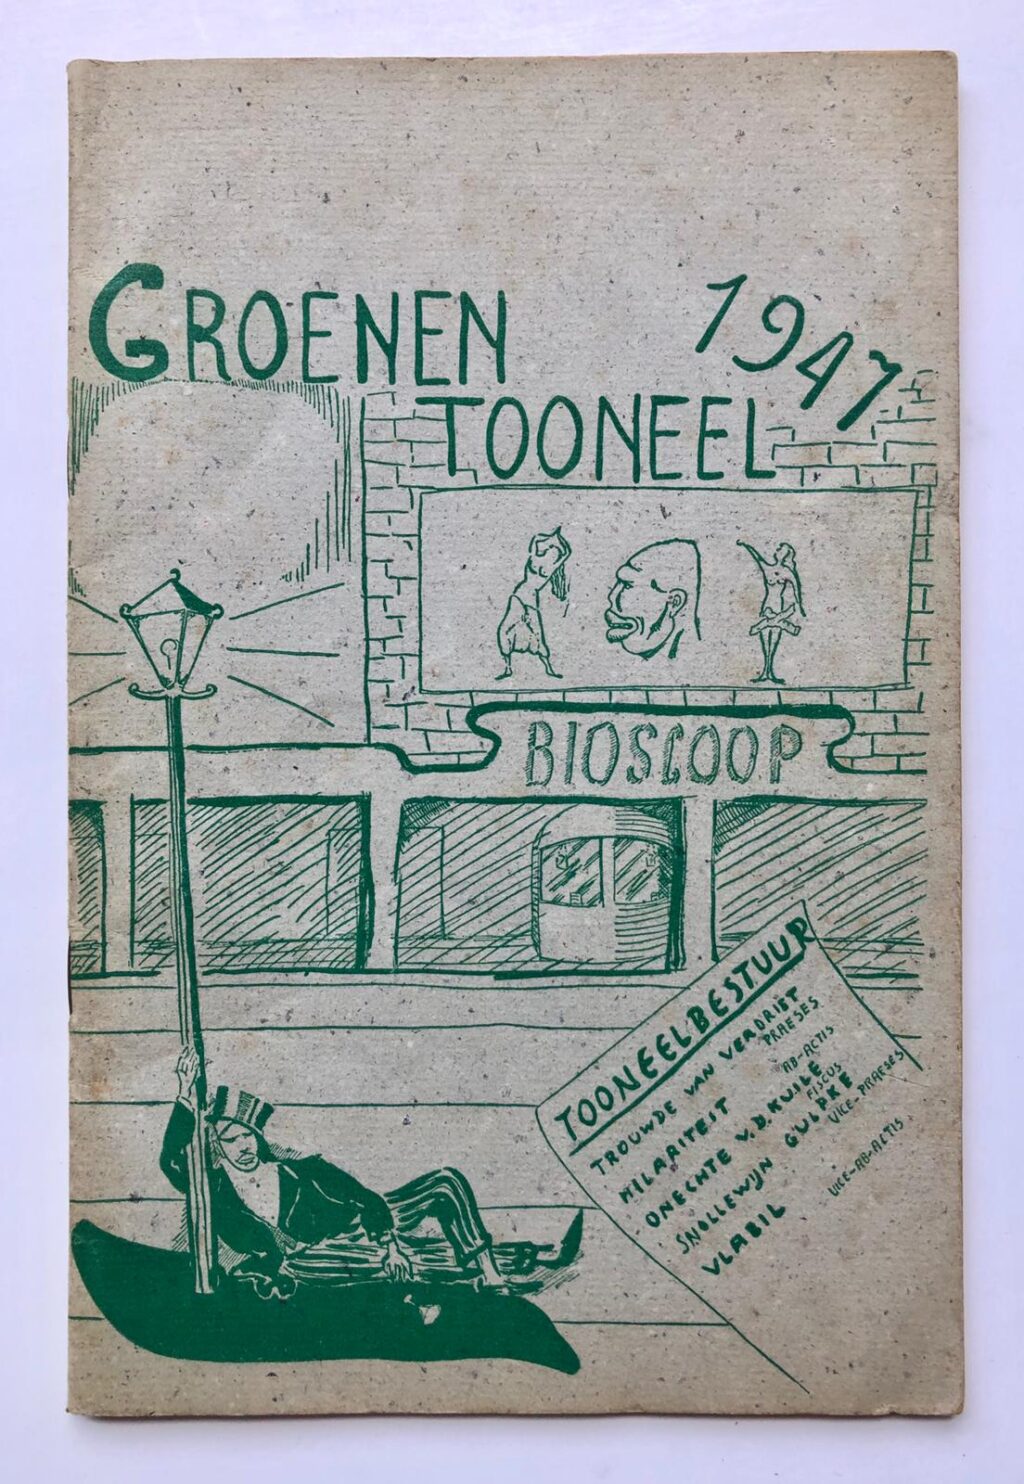 [Printed theatre programm, Students, 1947] Groenentoneel 1947, gedrukt programmaboekje voor uitvoering 24-9-1947, 40 pag.